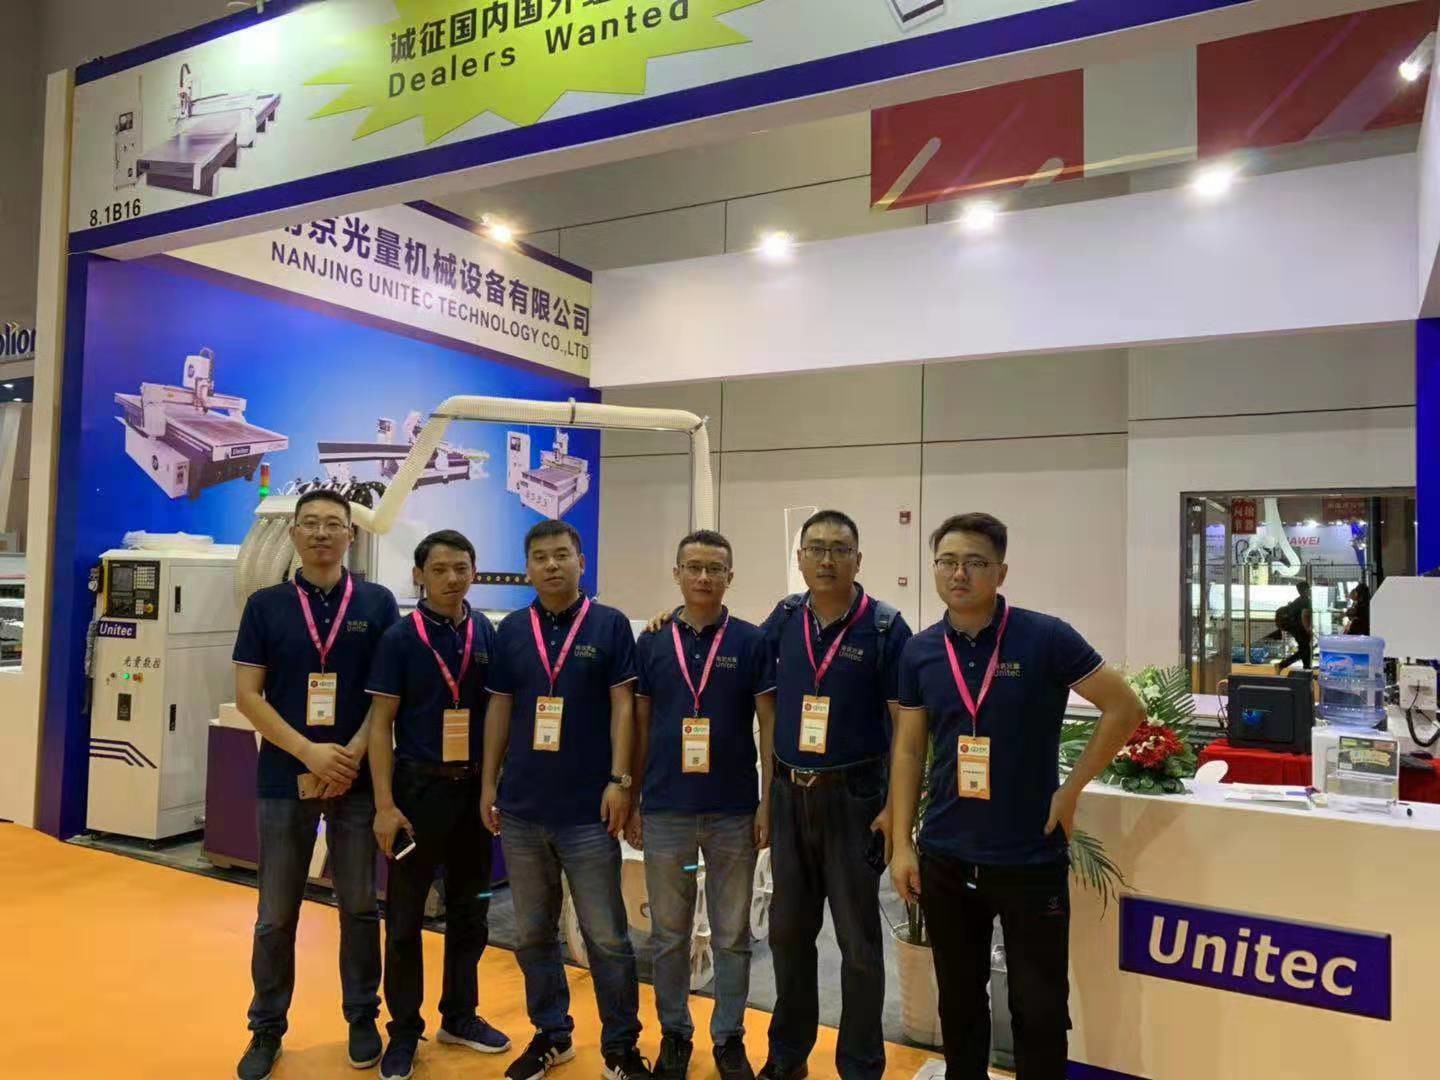 Trung Quốc Nanjing Unitec Technology Co., Ltd. hồ sơ công ty